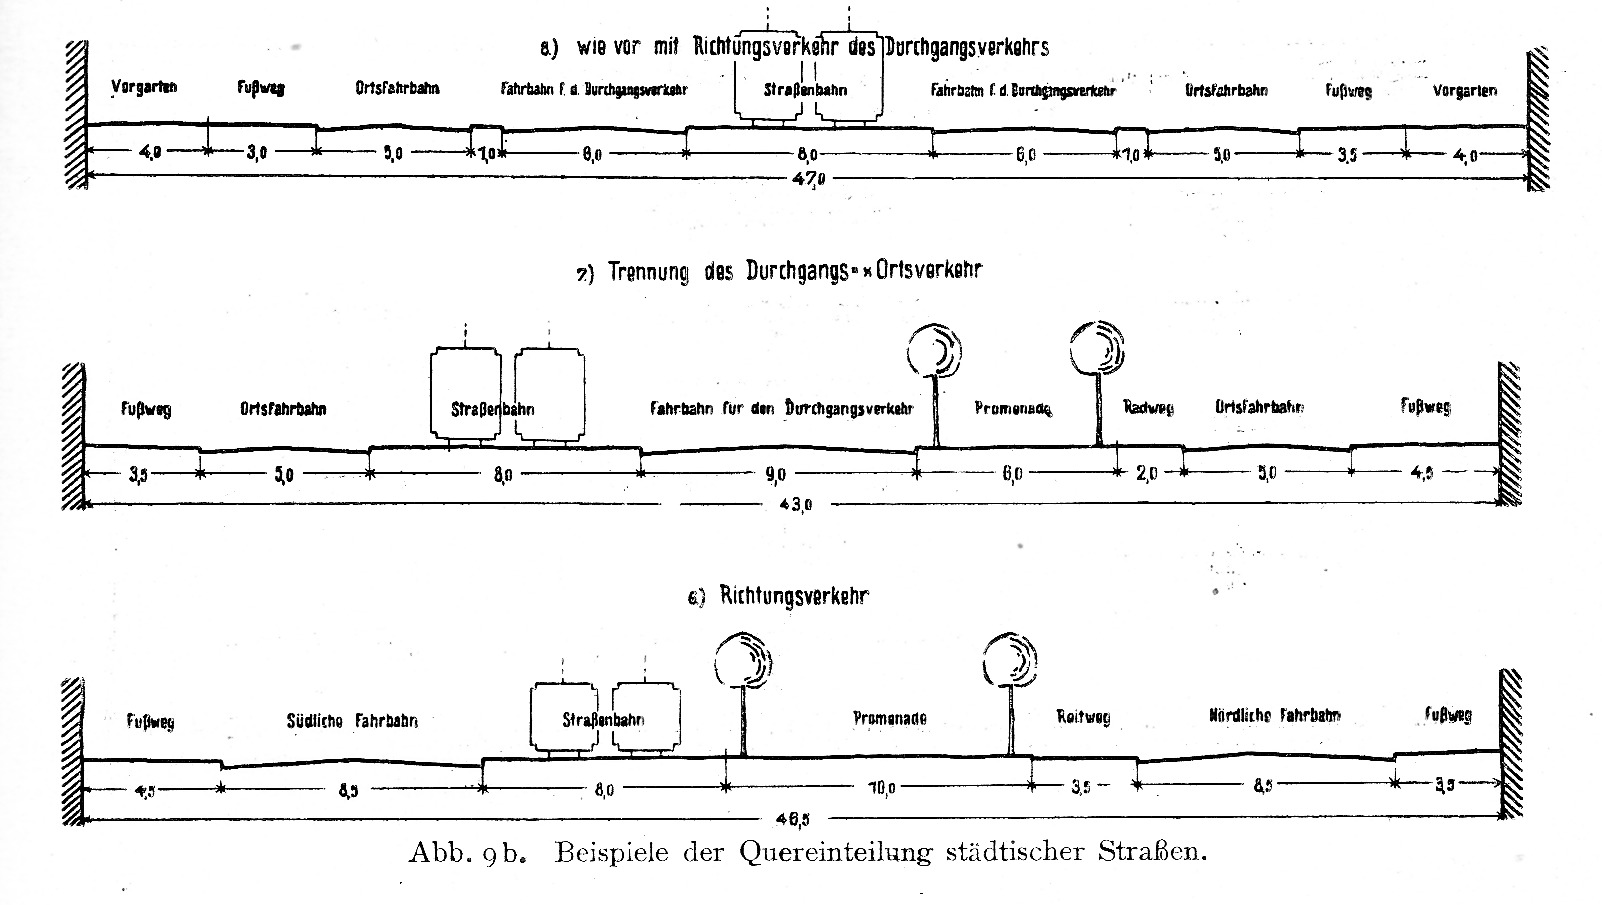 Mögliche Trennung der Verkehrsarten auf städtischen Straßen
(Quelle: Piilipp Rappaport und Karl Heller, Allgemeine Straßenplanung, Halle (Saale) 1928, S. 25)